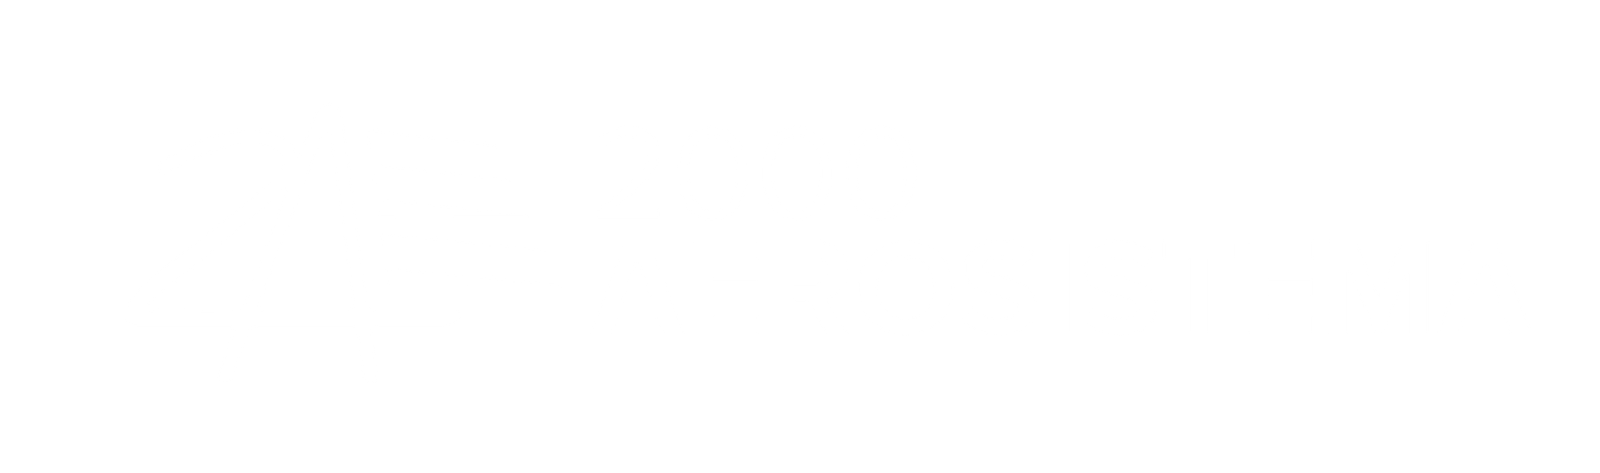 2000 Aerosistema